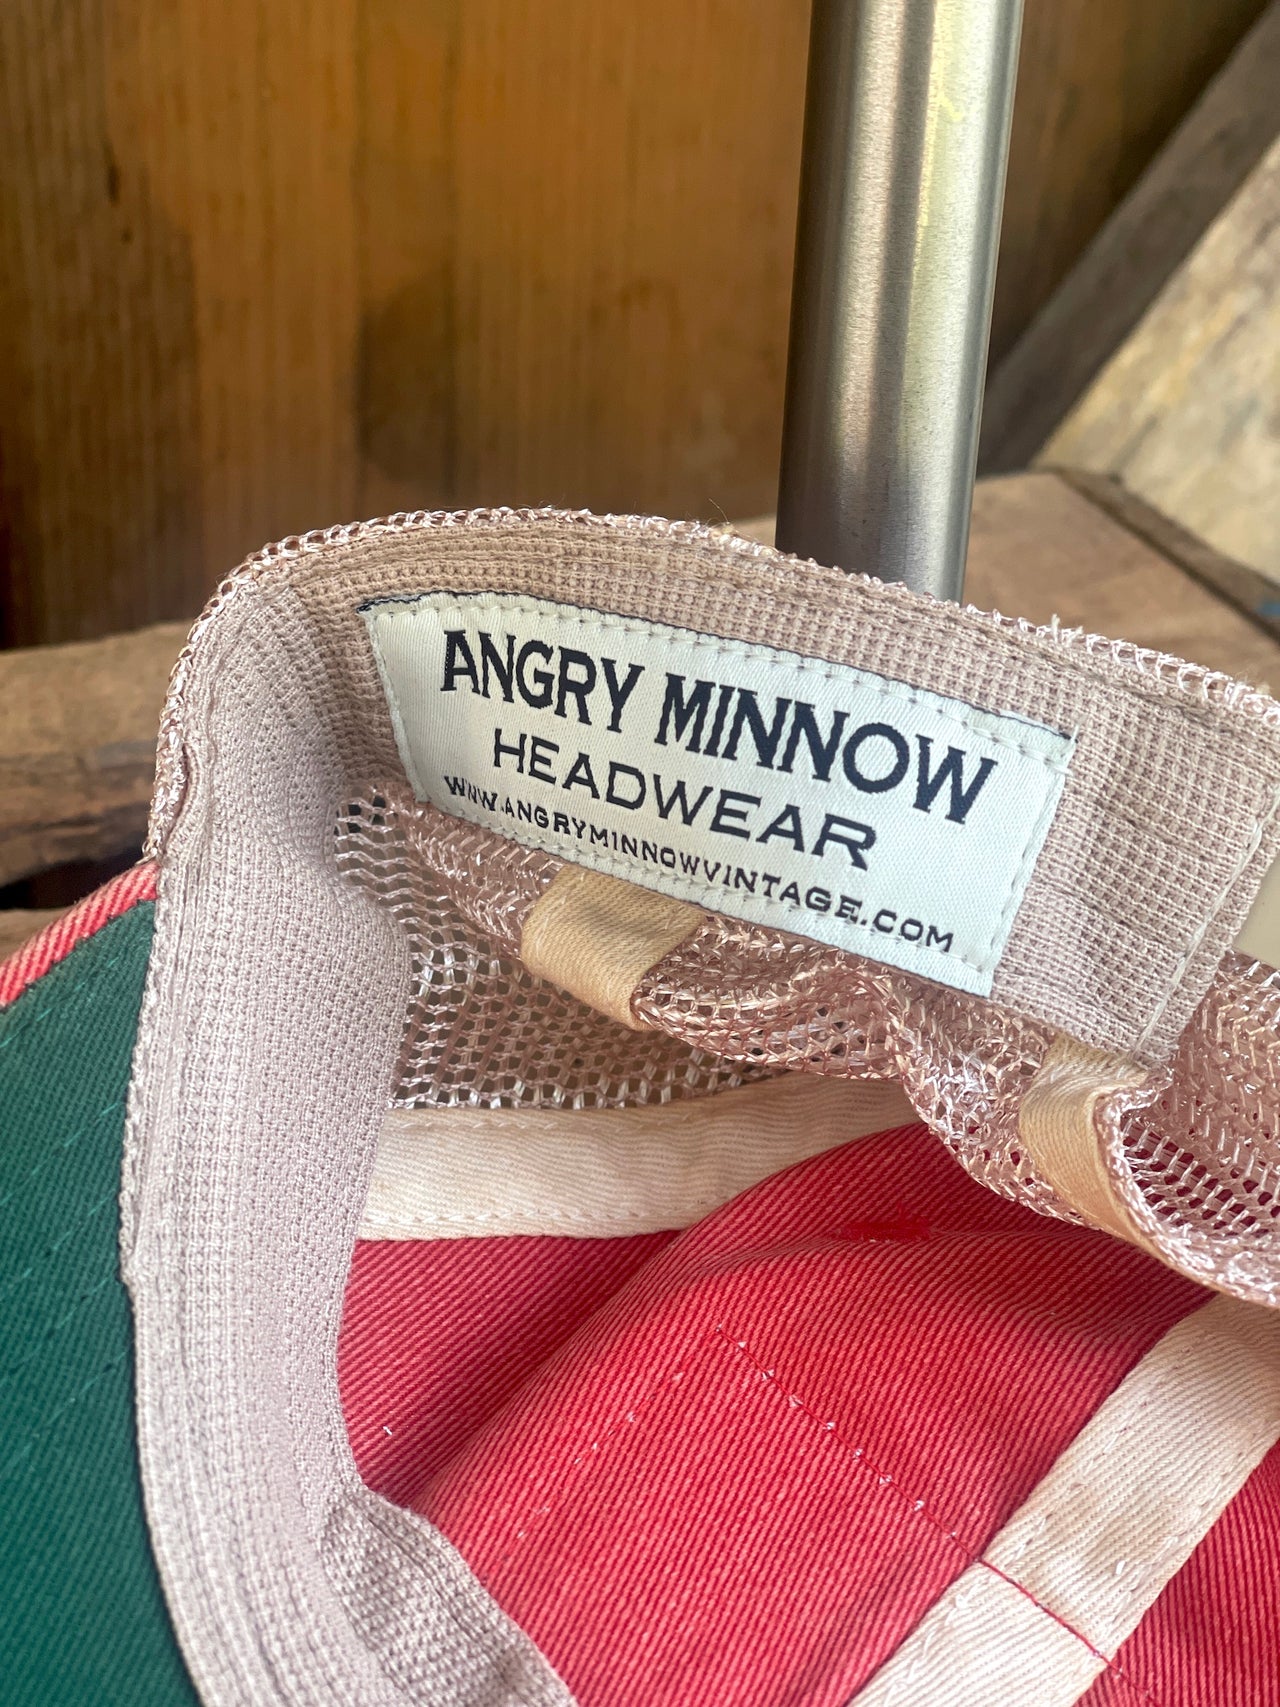 Angry Minnow Headwear